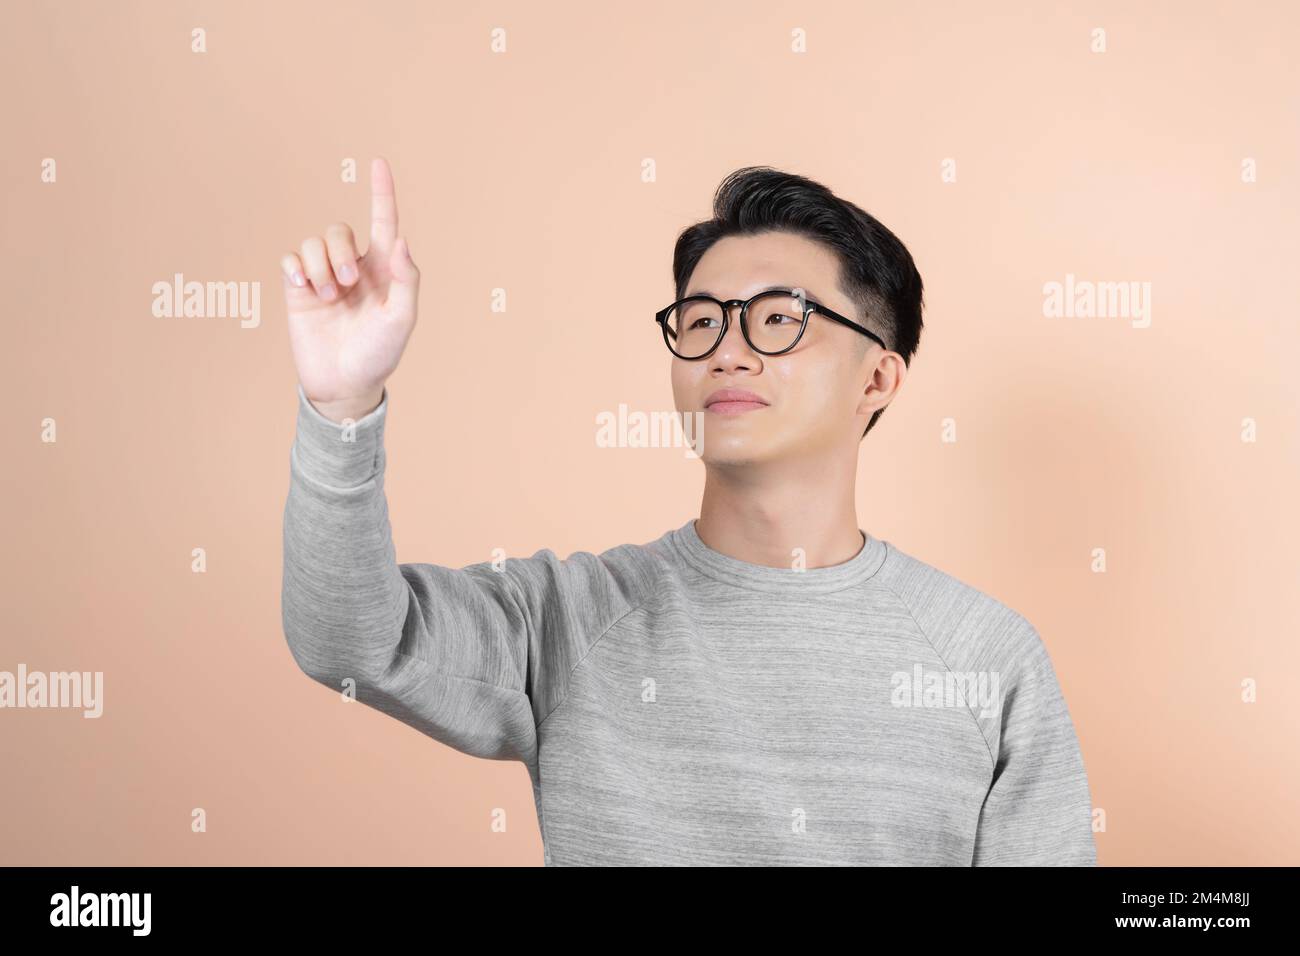 Ein klug aussehender Mann schaut nach oben und hält seine Hände, als würde er einen großen Touchscreen bedienen Stockfoto